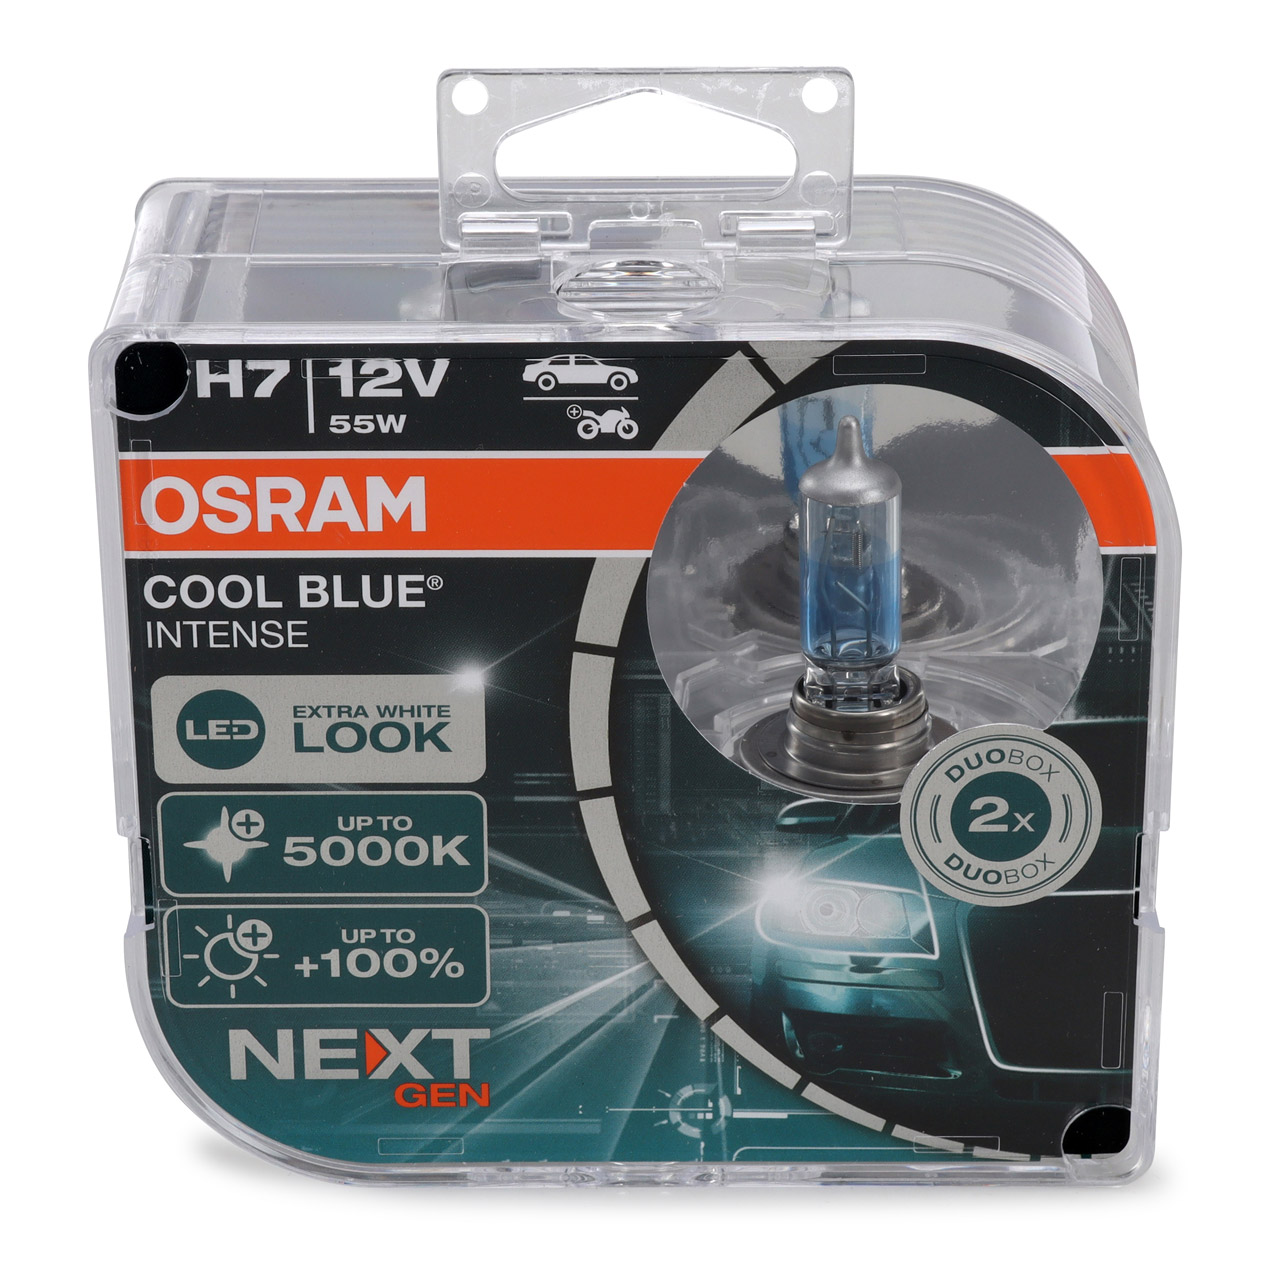 2x OSRAM Glühlampe H7 COOL BLUE INTENSE Next Gen 12V 55W PX26d +100% 5000K